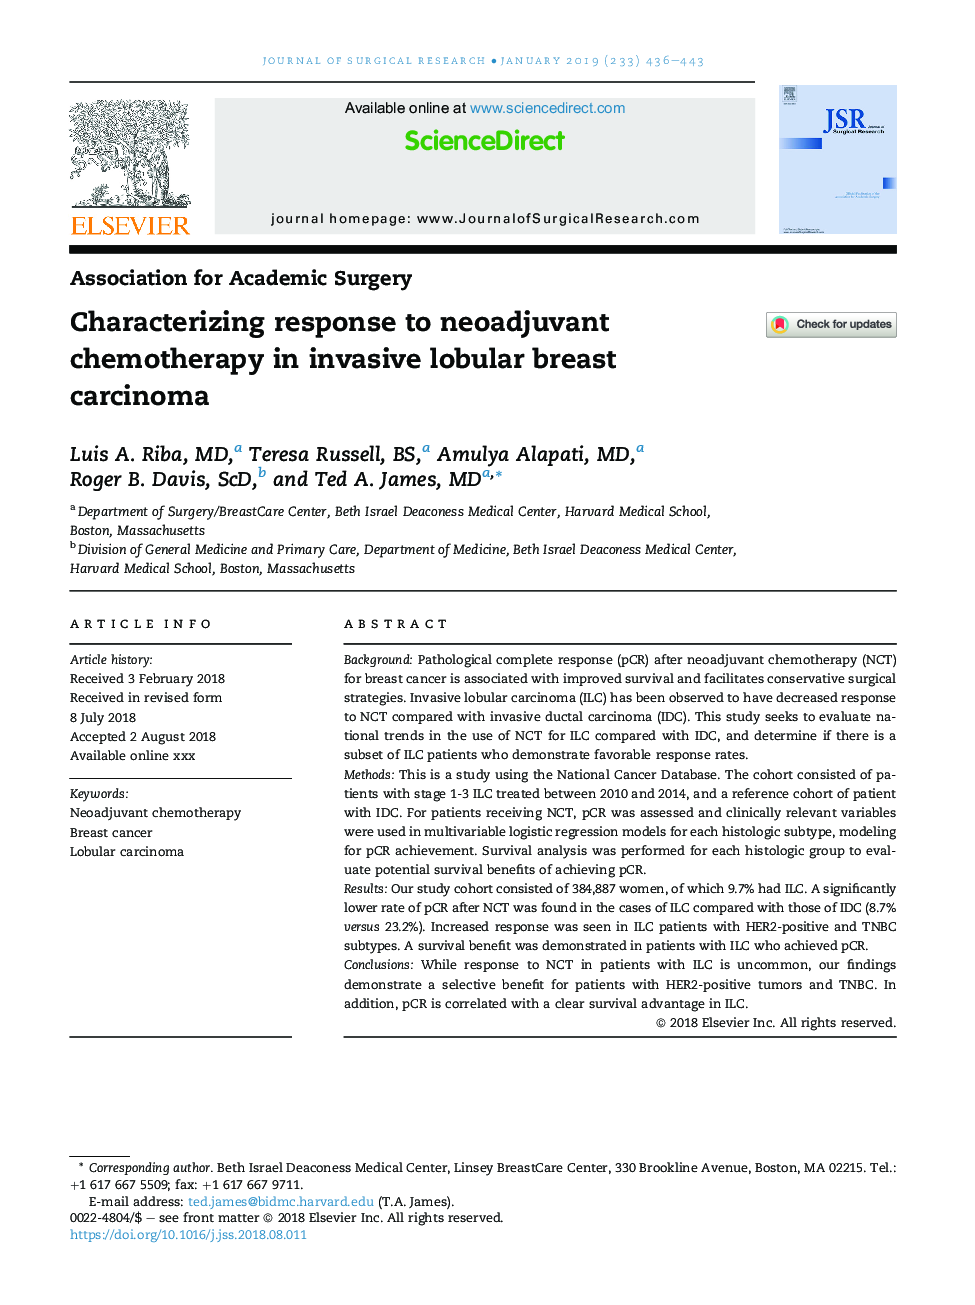 تشخیص پاسخ به شیمی درمانی نئوادجوانانت در کارسینوم پستان لوبولار مهاجم